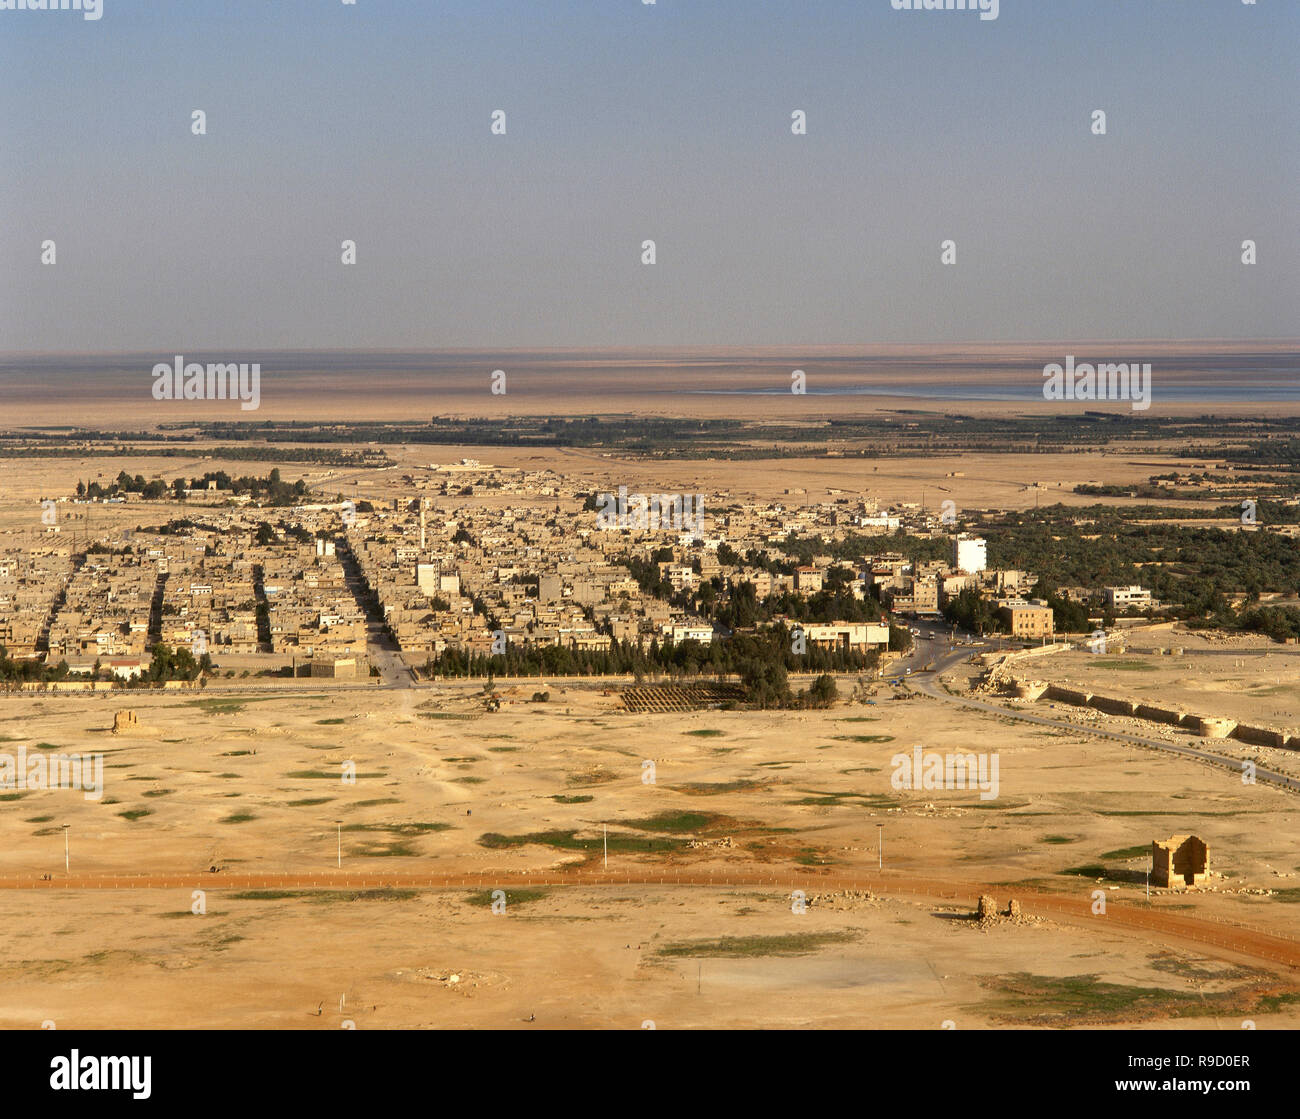 République arabe syrienne. Tadmor, près de l'ancienne Palmyre/Tadmor. Paysage panoramique. Photo prise avant la guerre civile syrienne. Banque D'Images